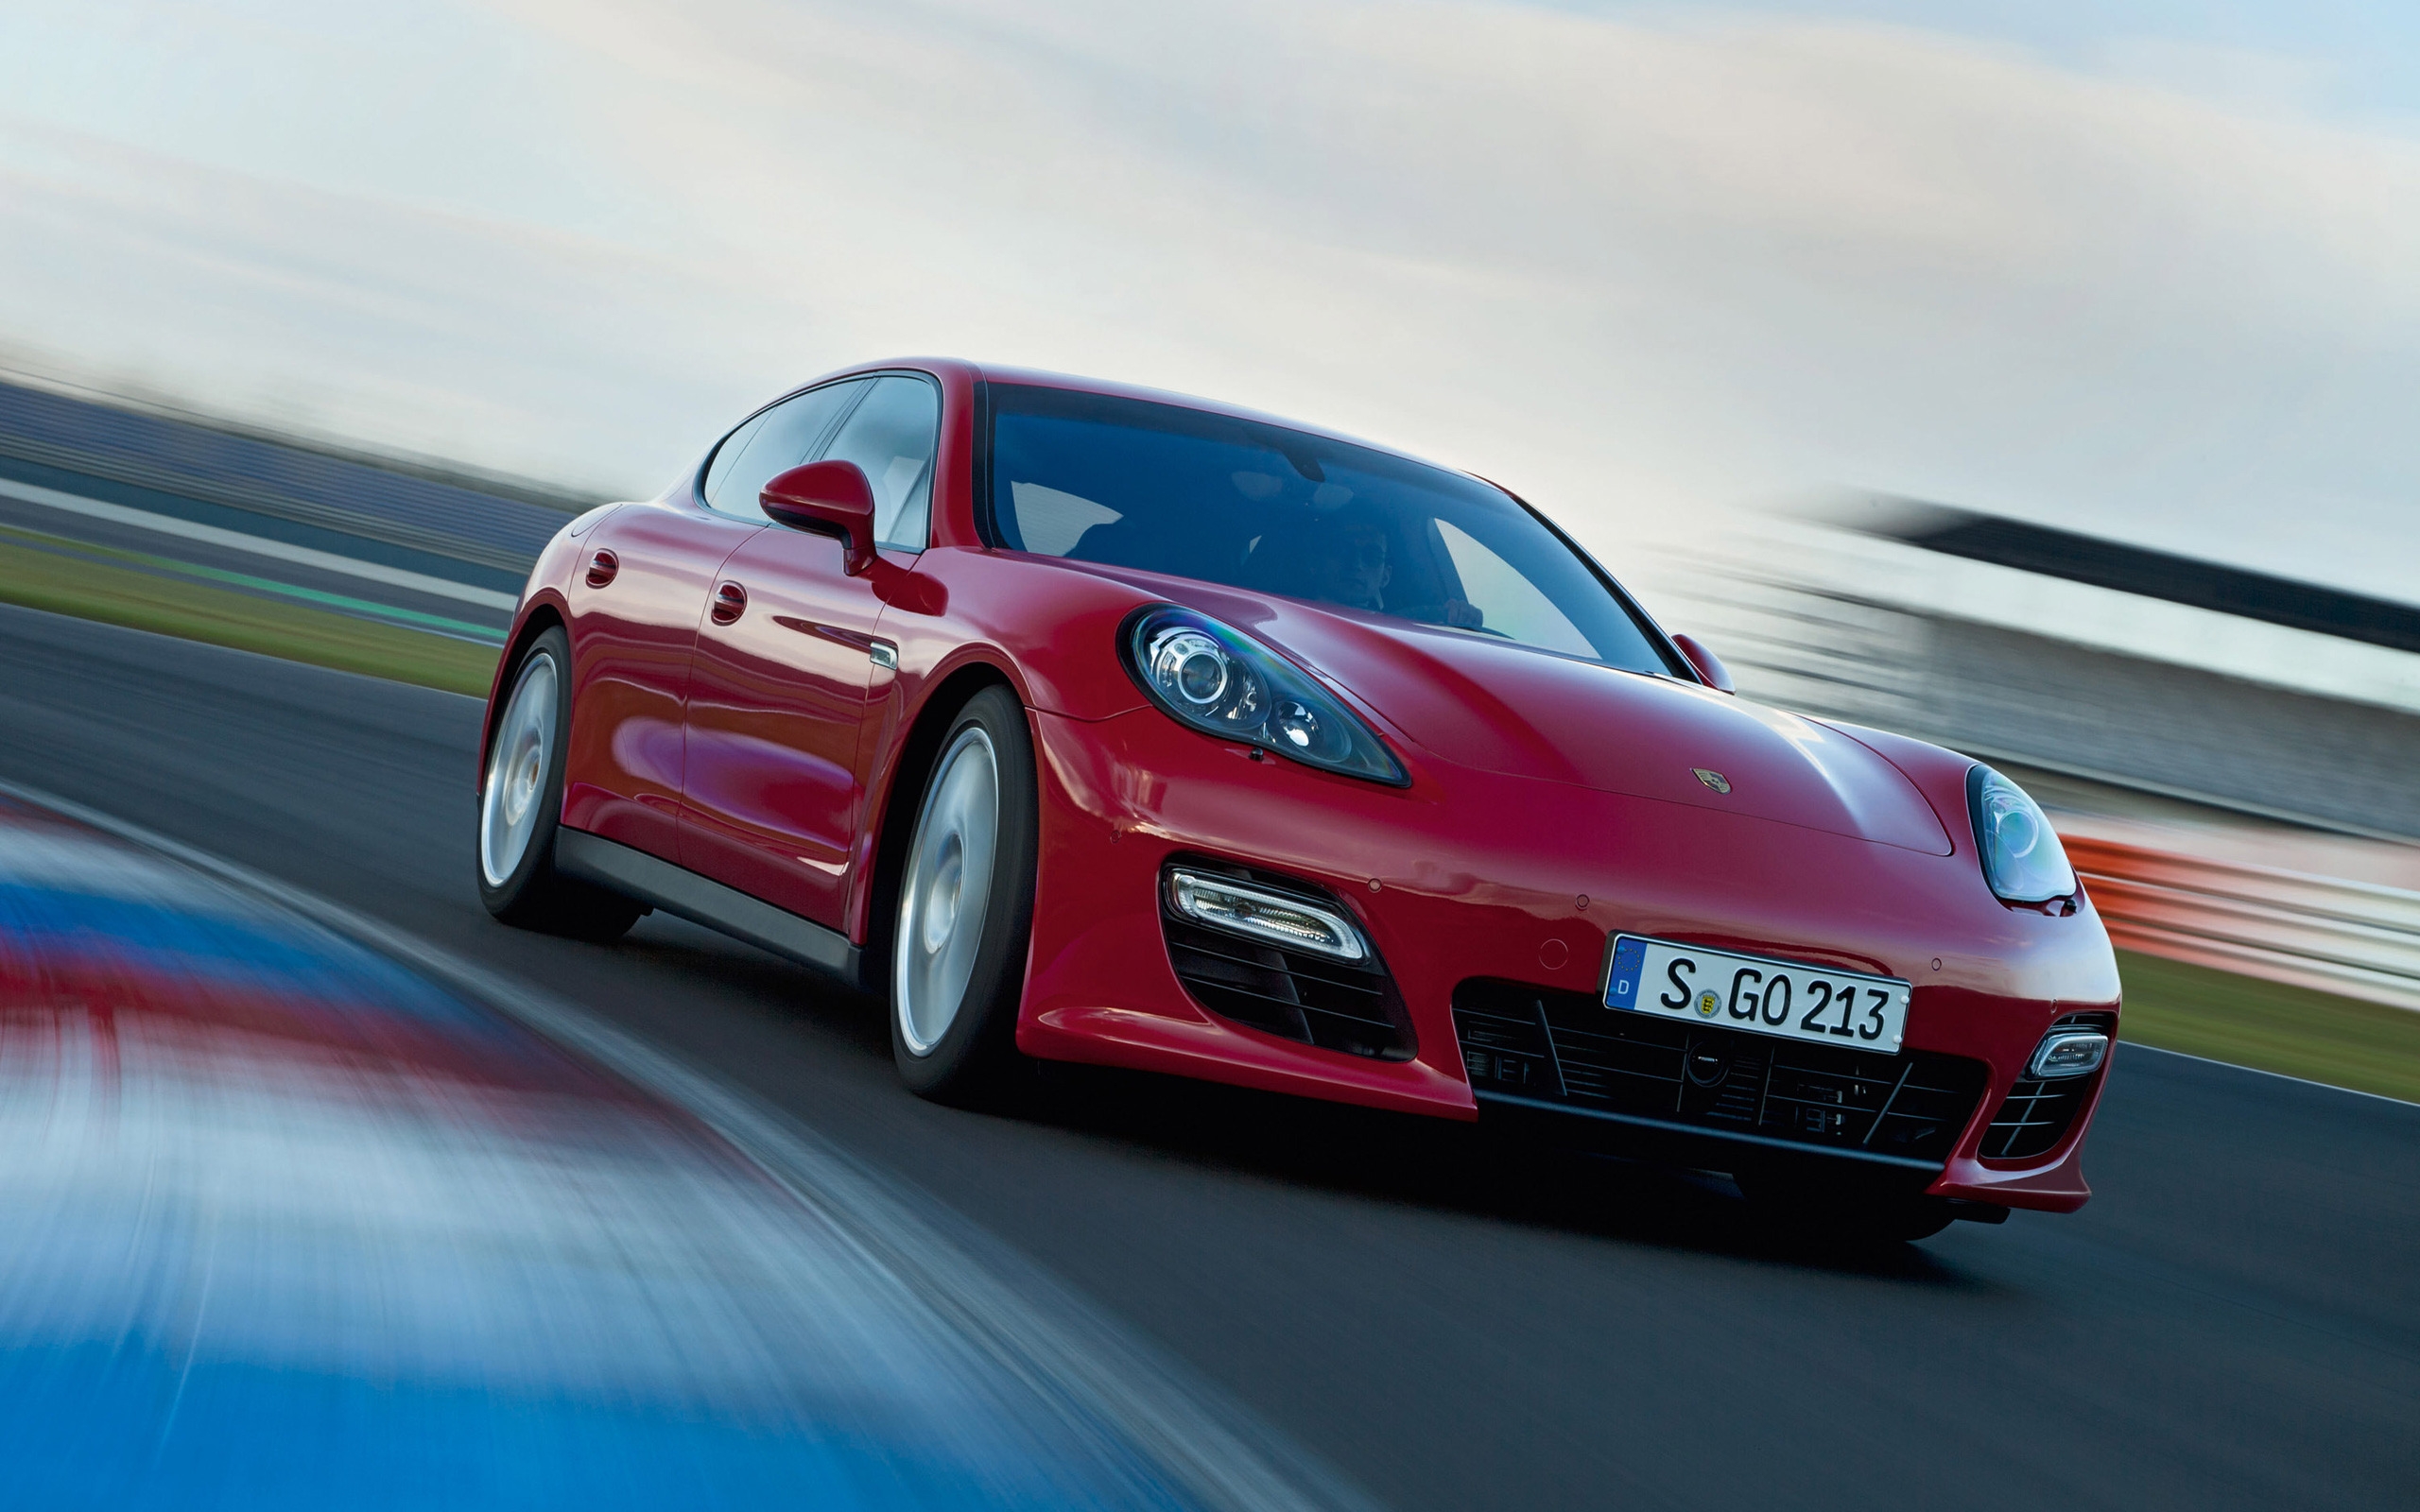 2012 Porsche Panamera GTS for 2560 x 1600 widescreen resolution